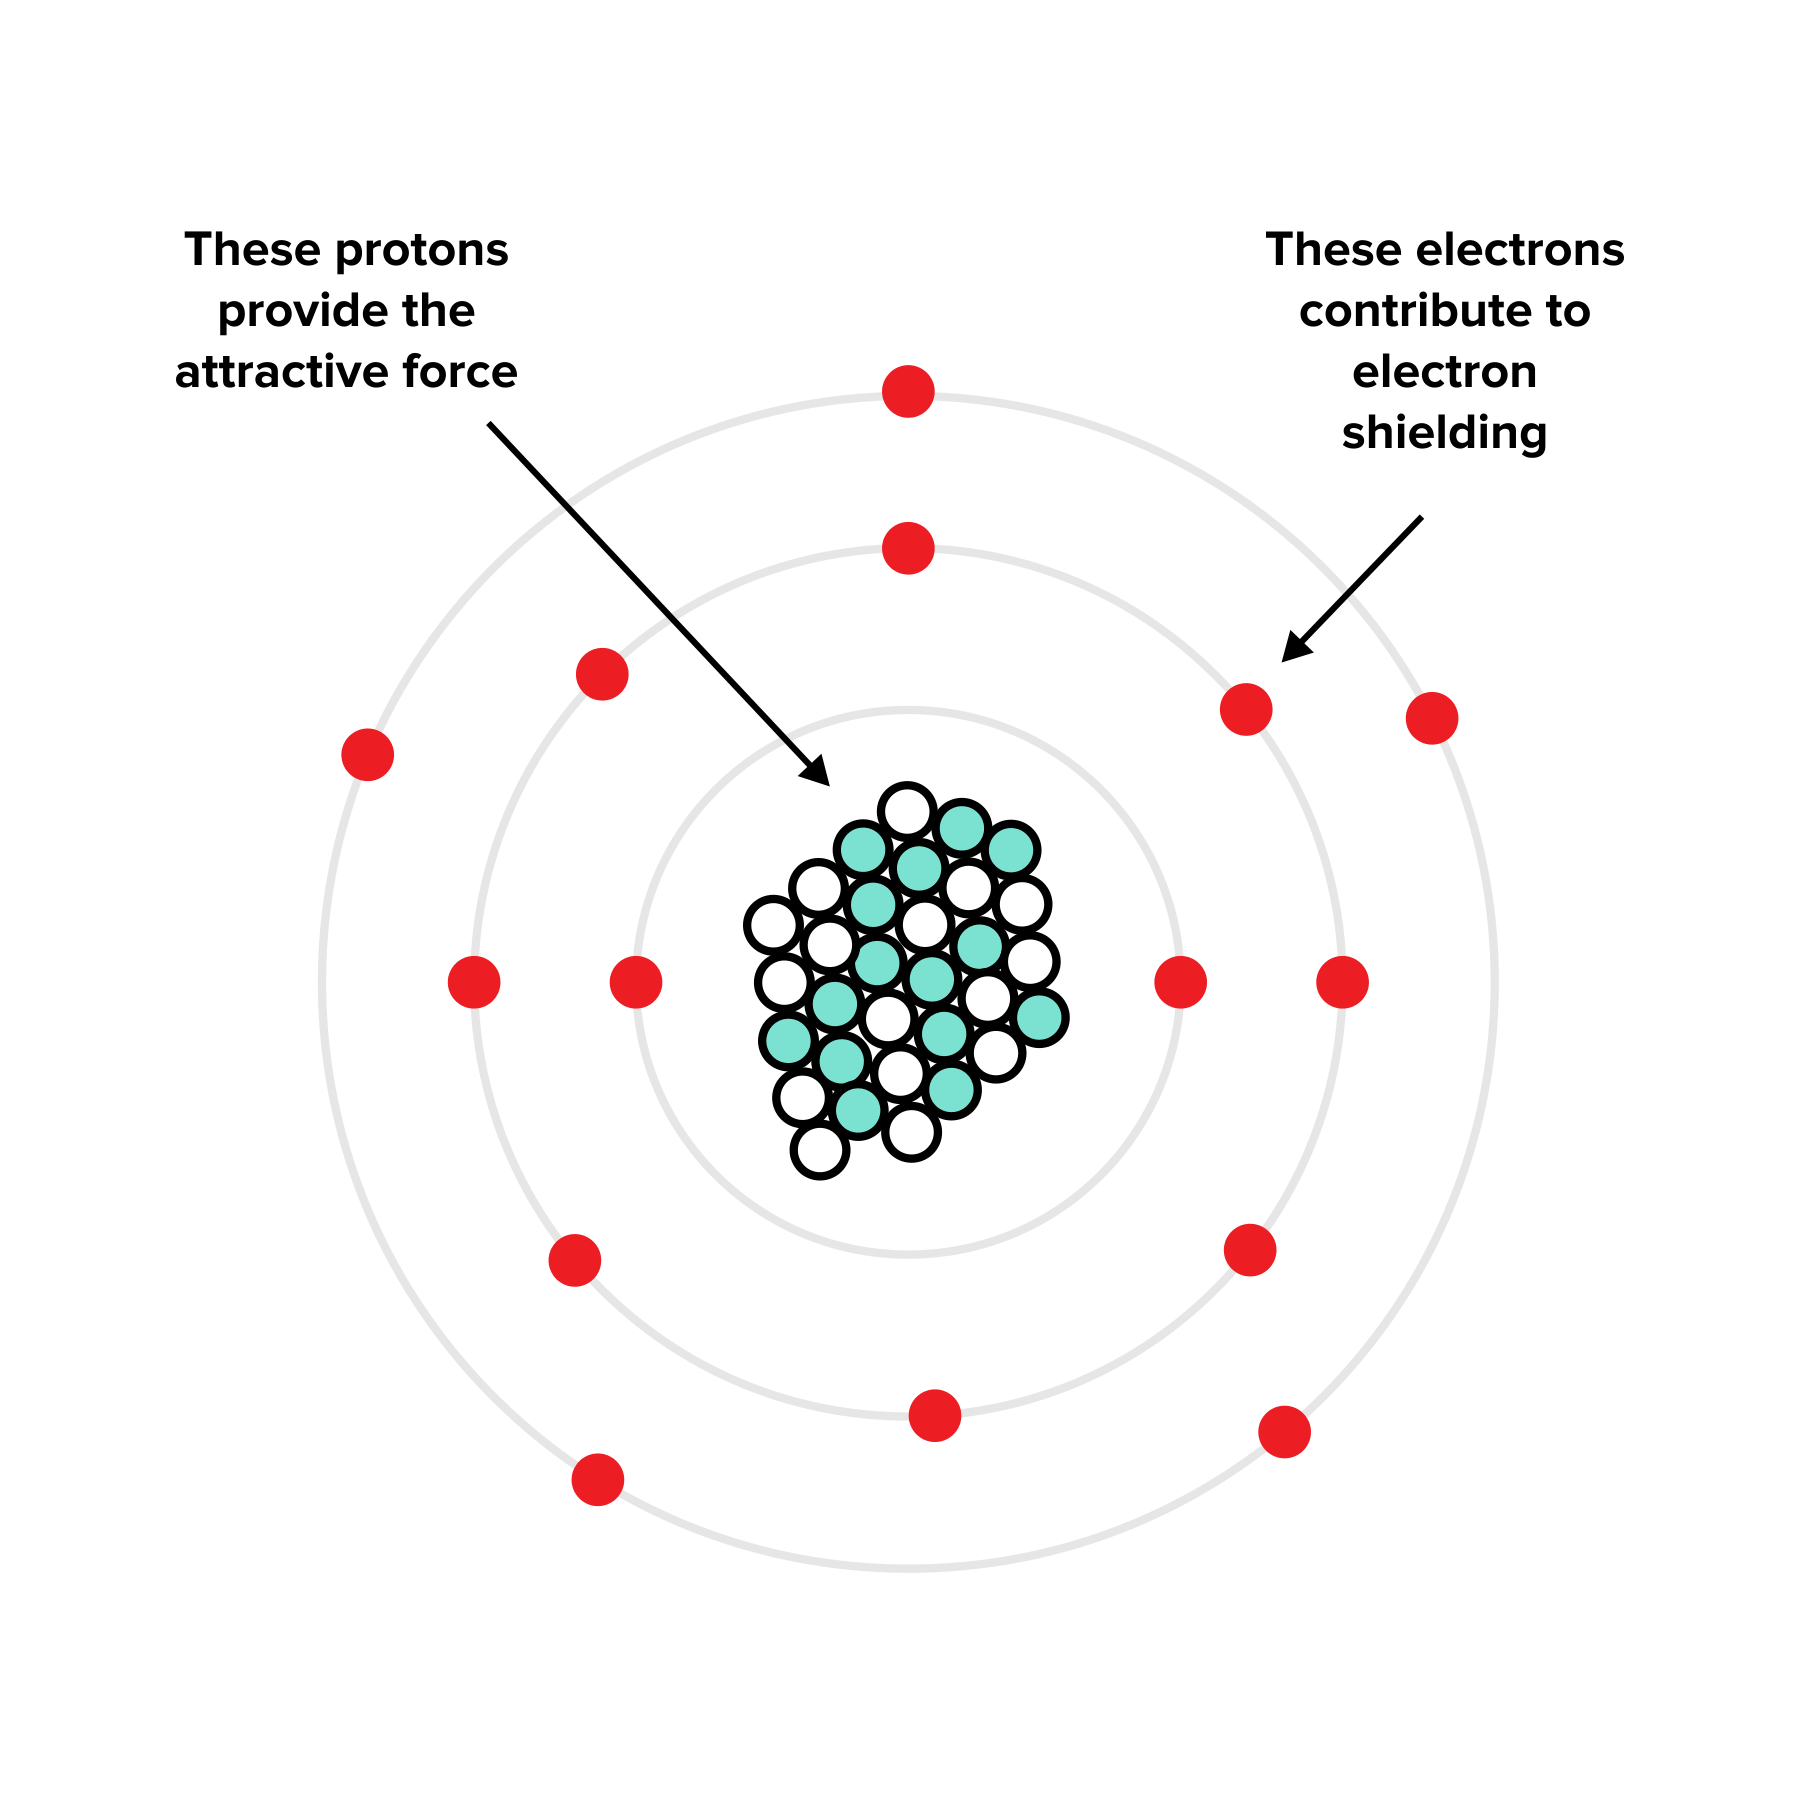 图:有效核电荷取决于质子和电子屏蔽的存在。